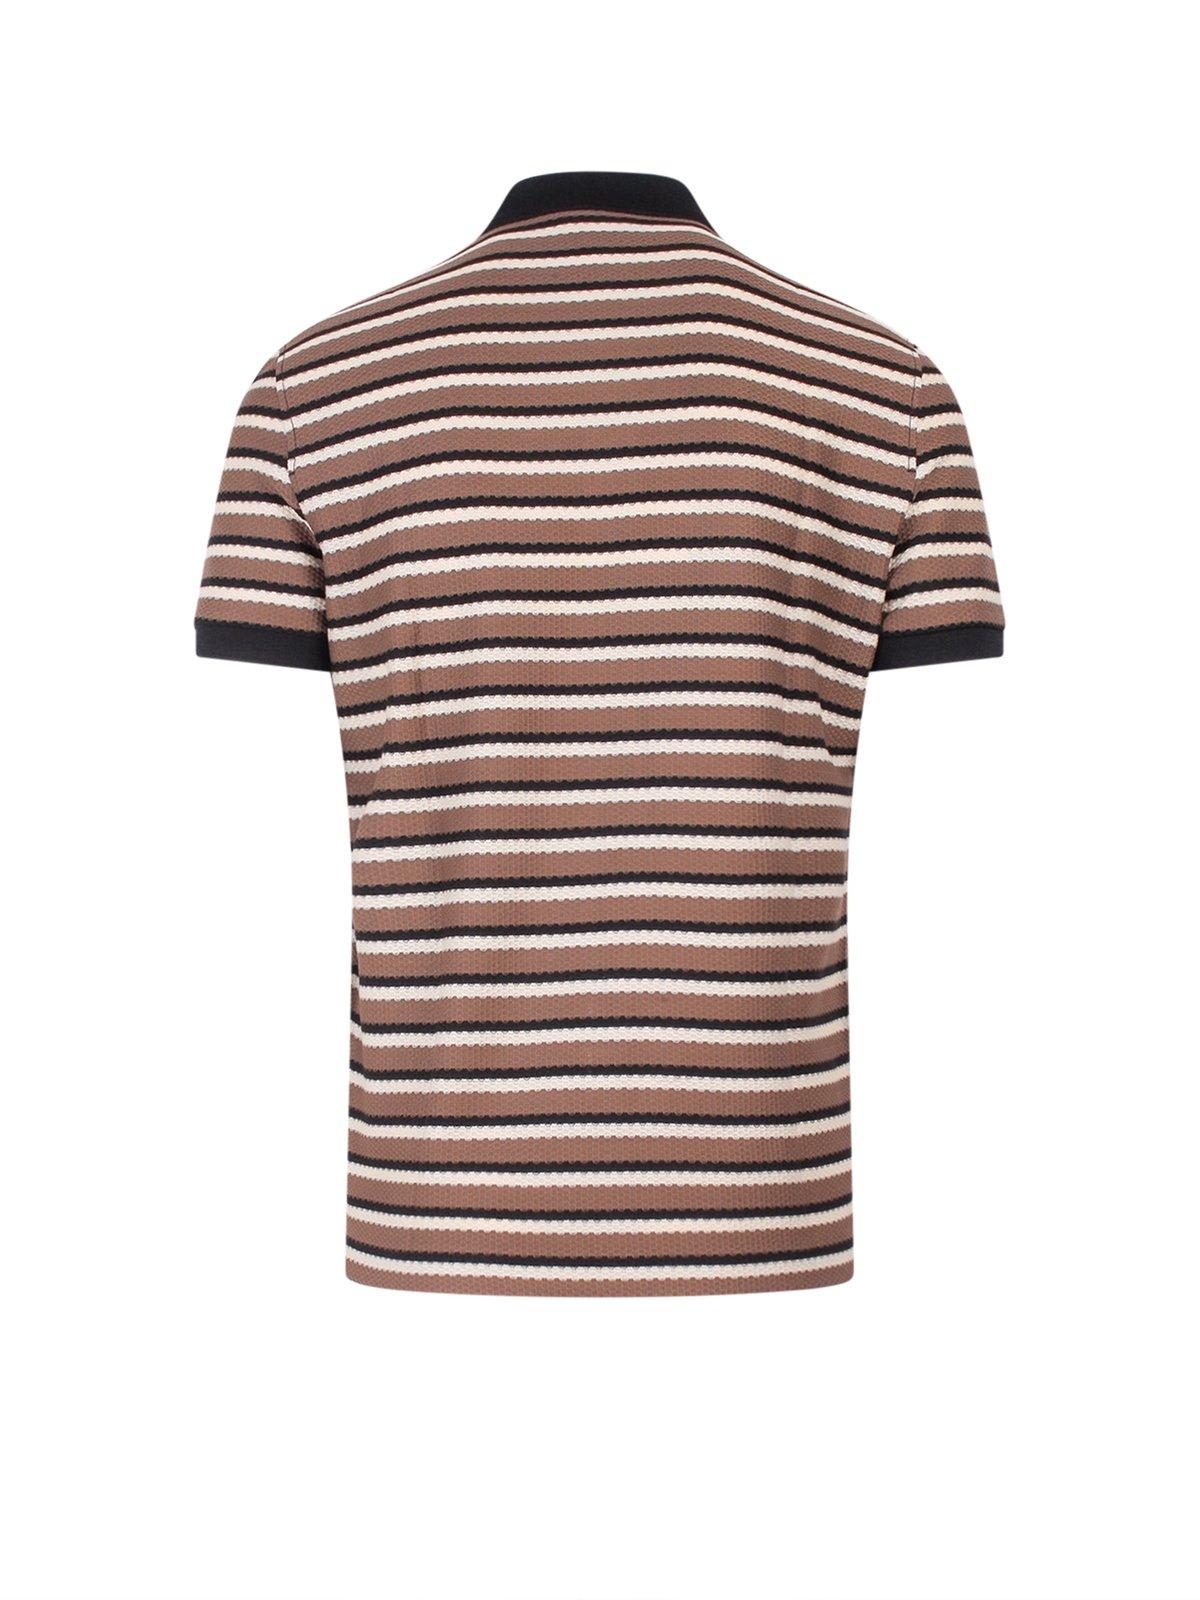 Shop Ferragamo Striped Logo Embroidered Polo Shirt In Noce/black/coco